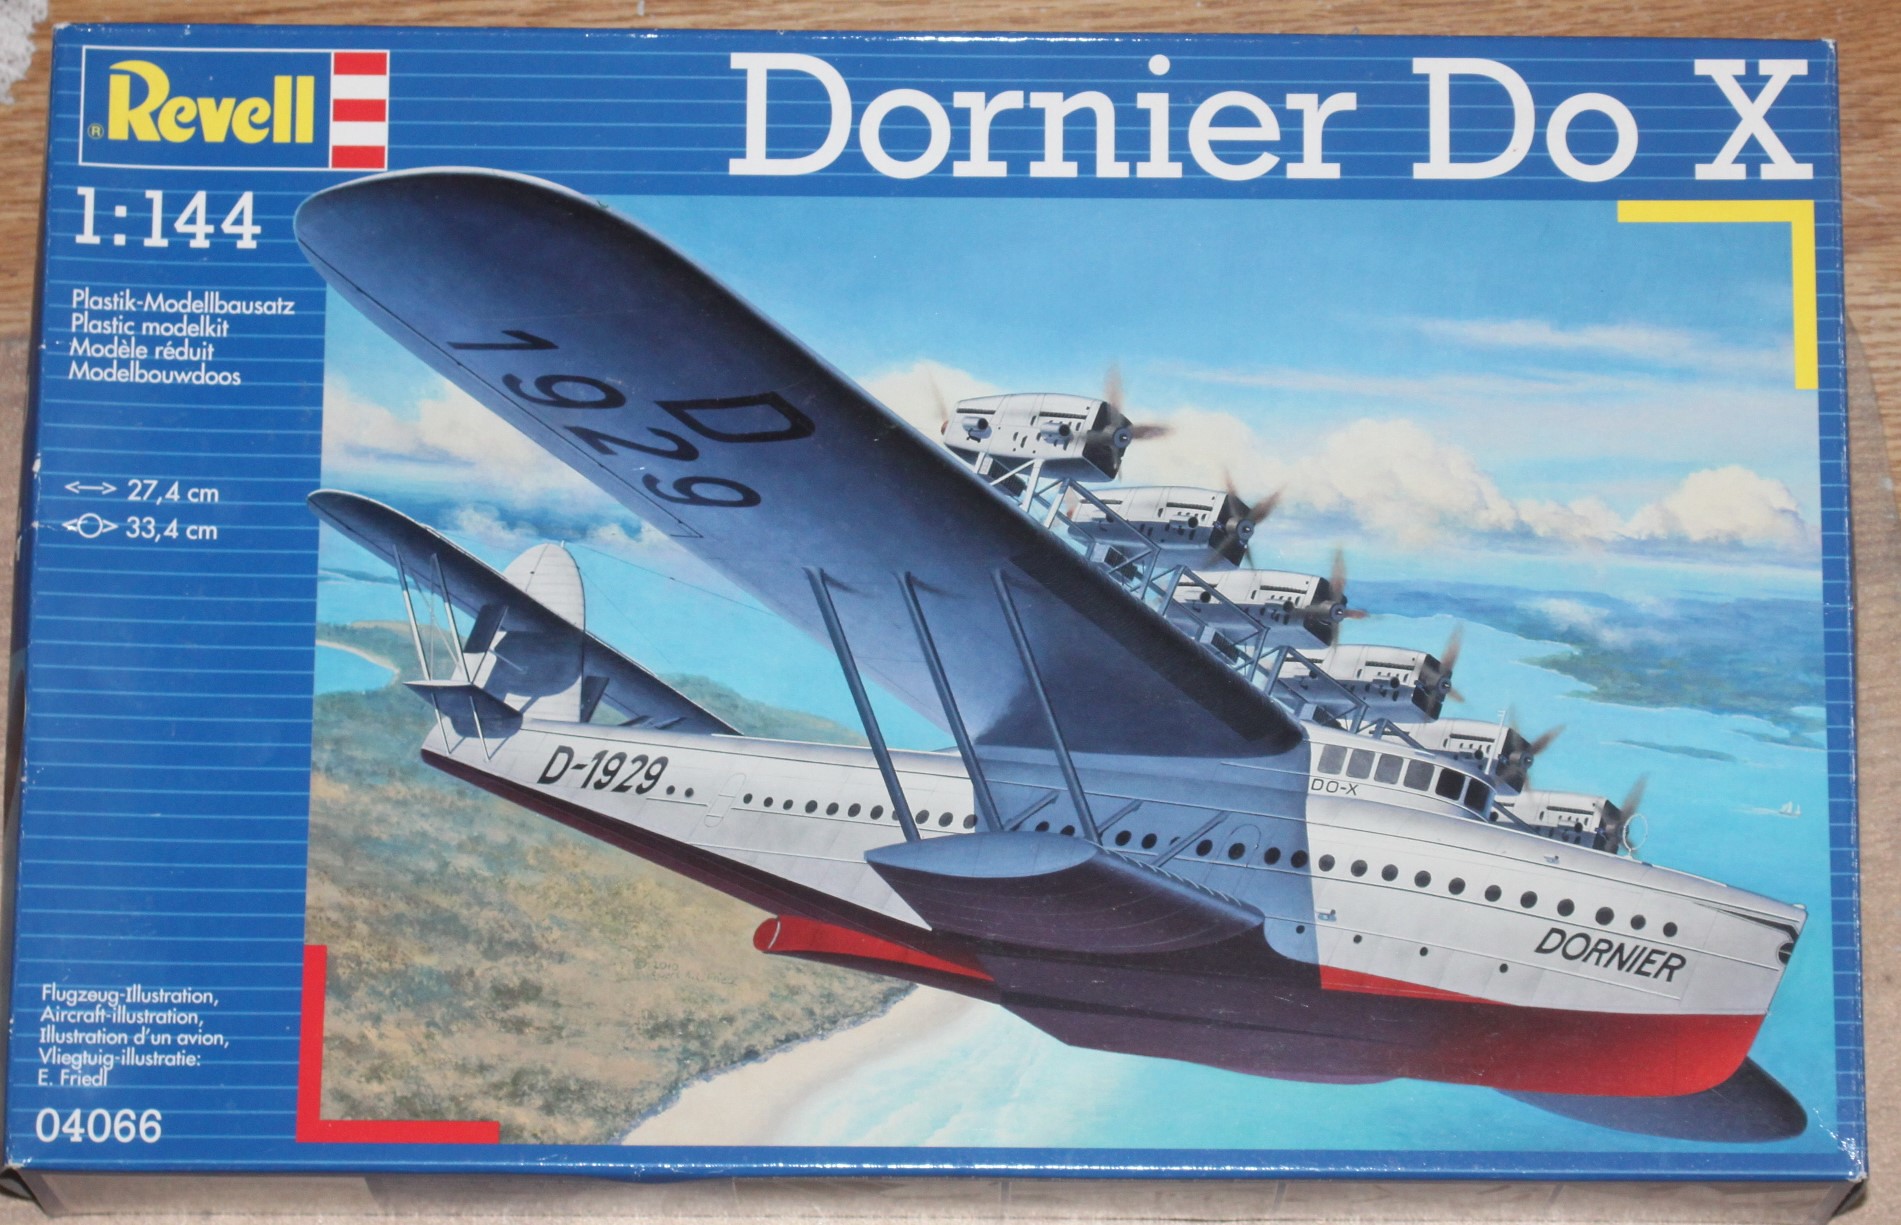 Dornier Do. X, Revell 1/144 52078742889_4fb7a7880f_k